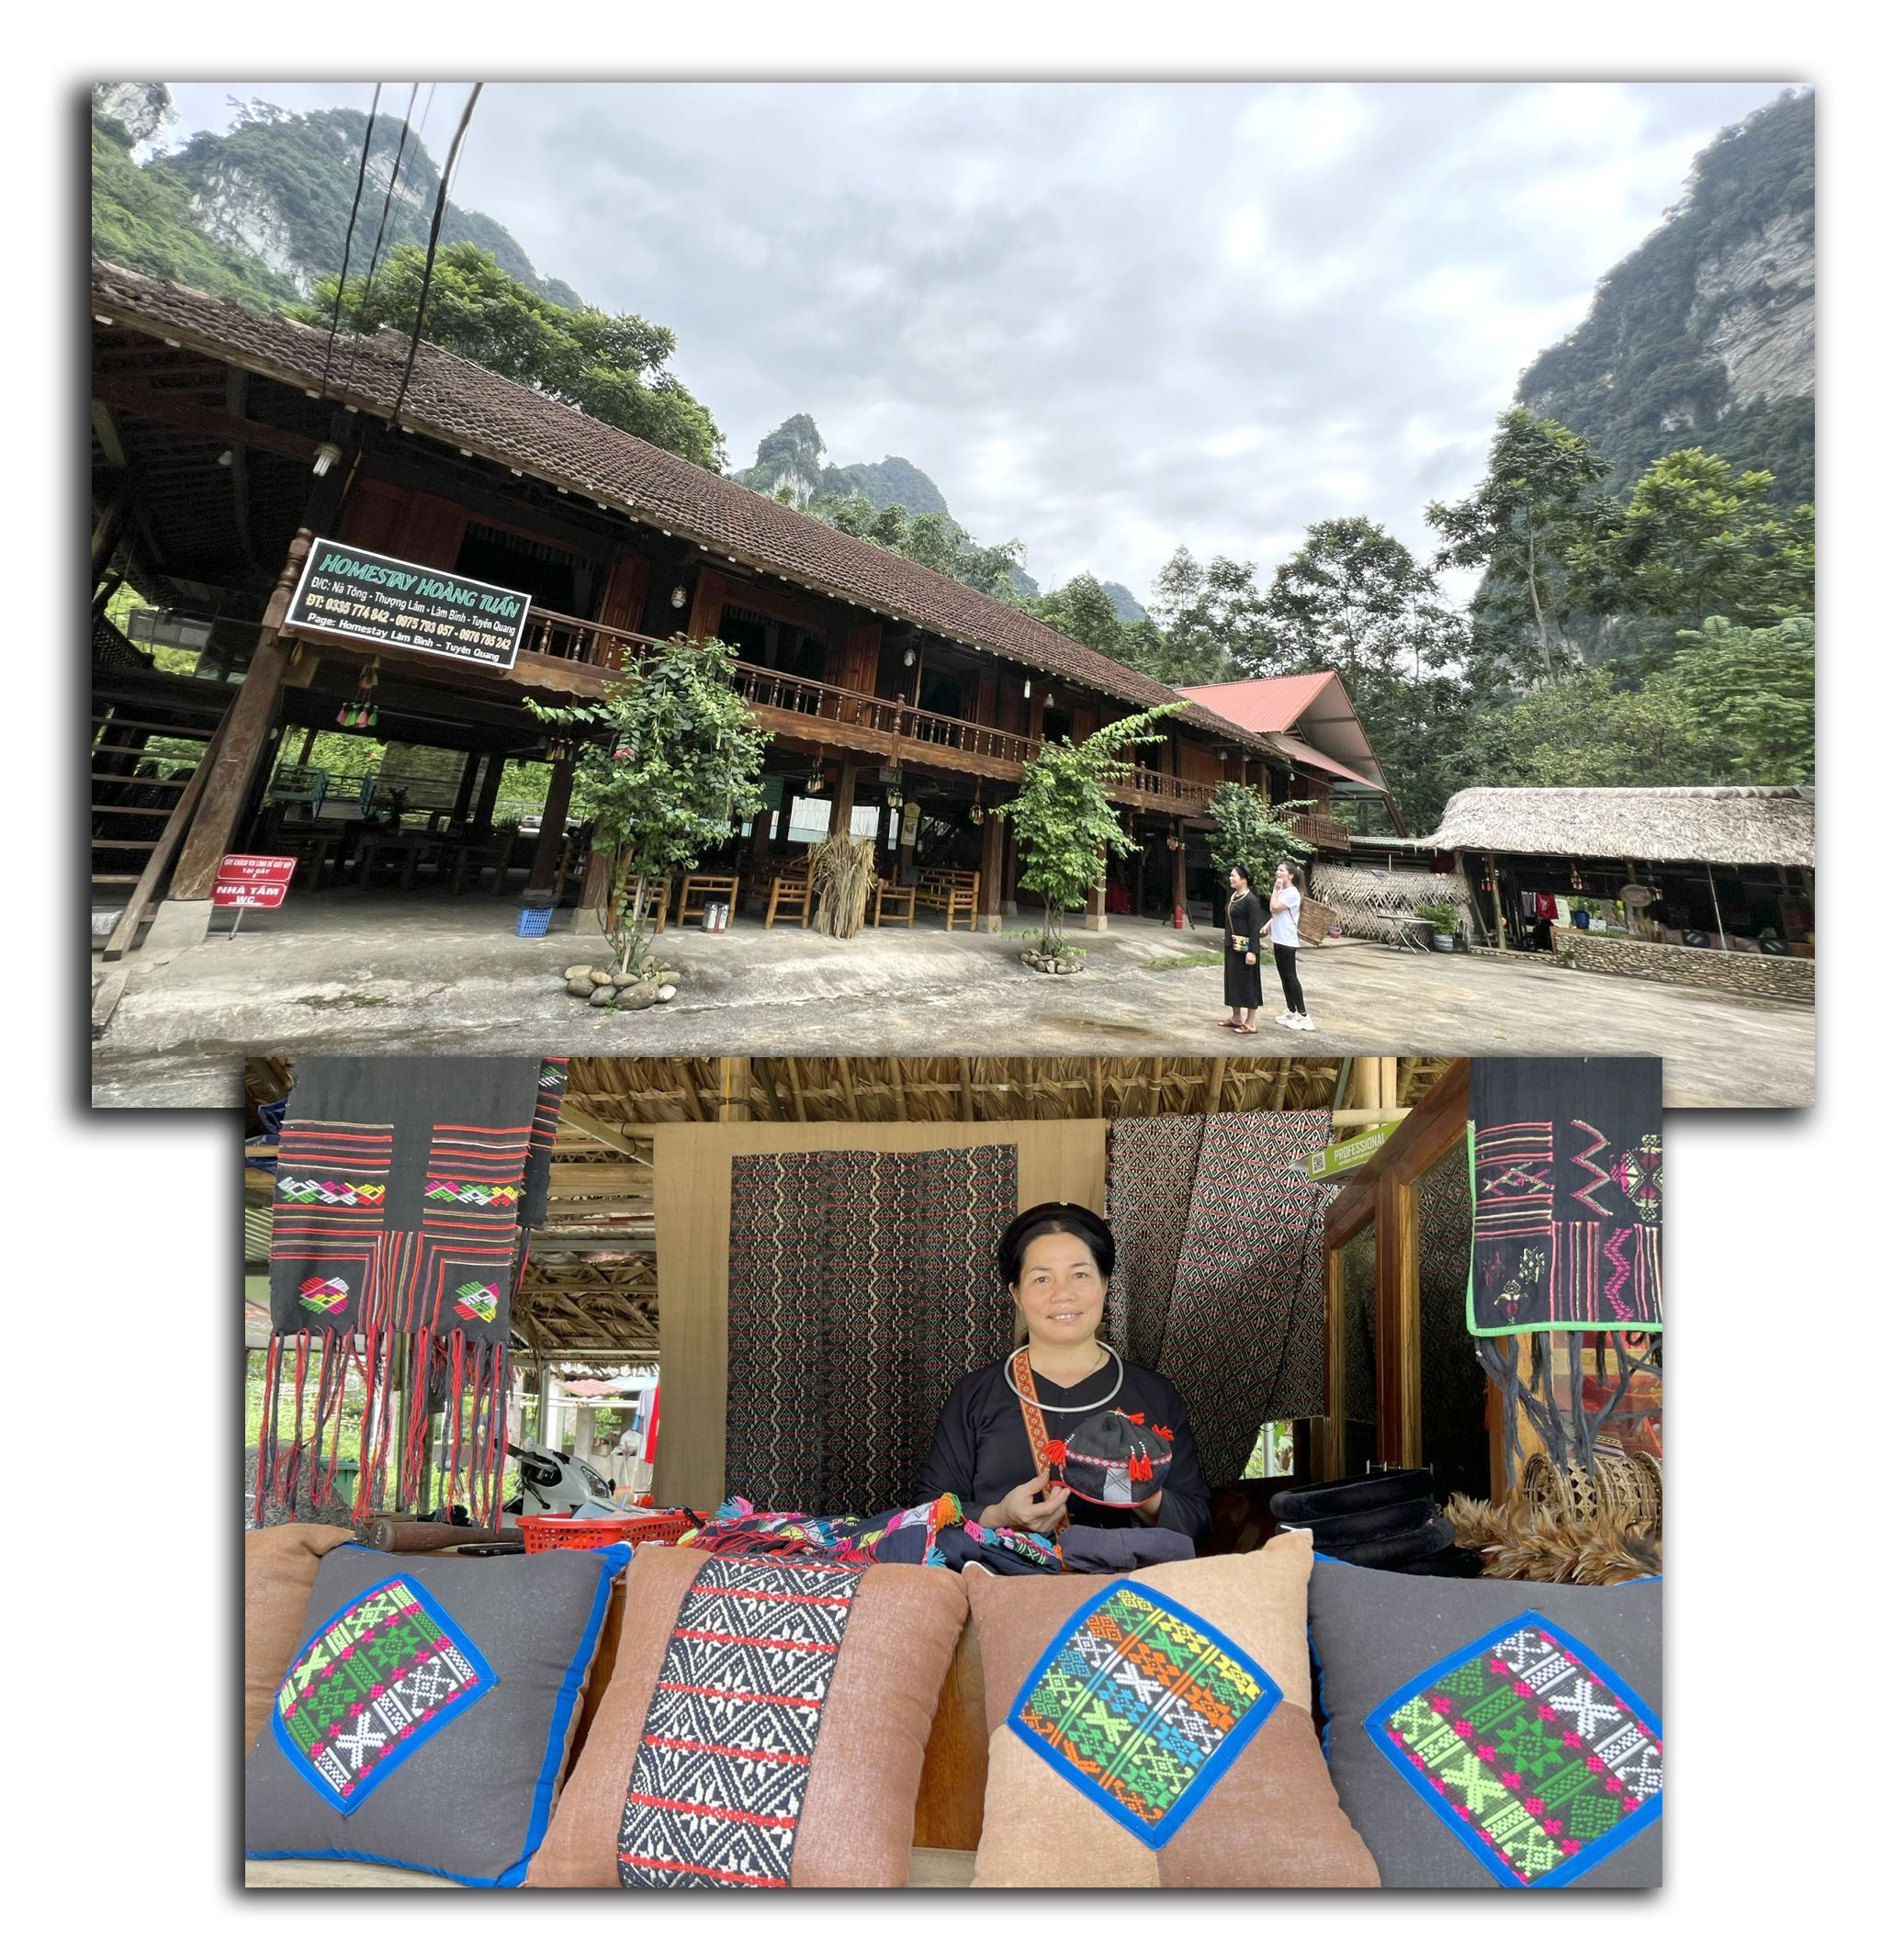 Ngôi nhà sàn truyền thống và Gian hàng bán đồ lưu niệm của chị Triệu Thị Xướng, thôn Nà Tông, xã Thượng Lâm (Lâm Bình).